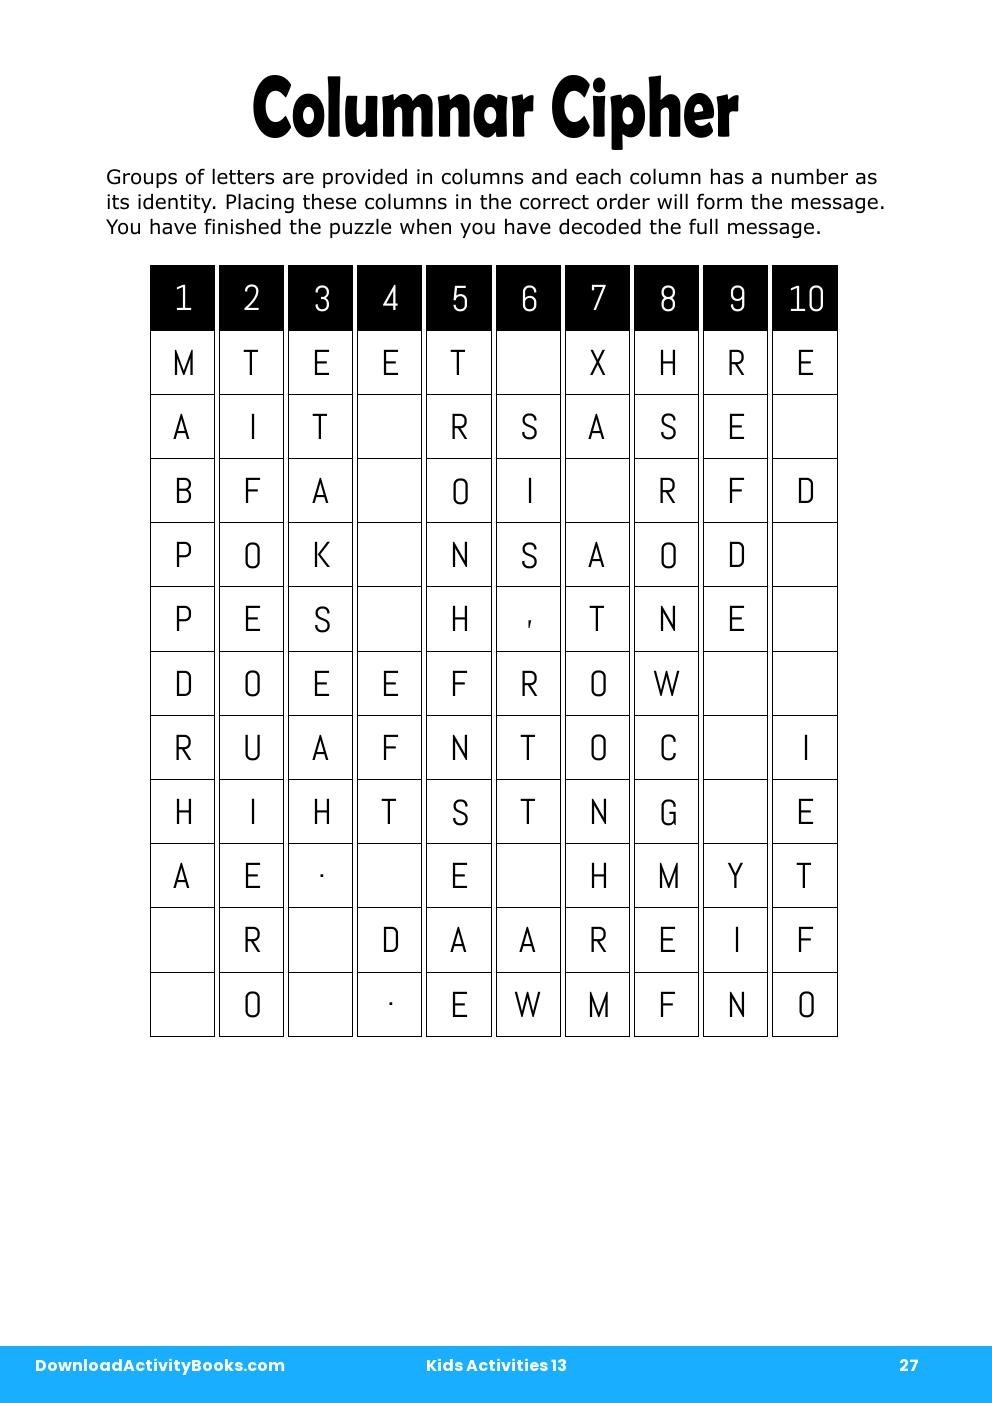 Columnar Cipher in Kids Activities 13